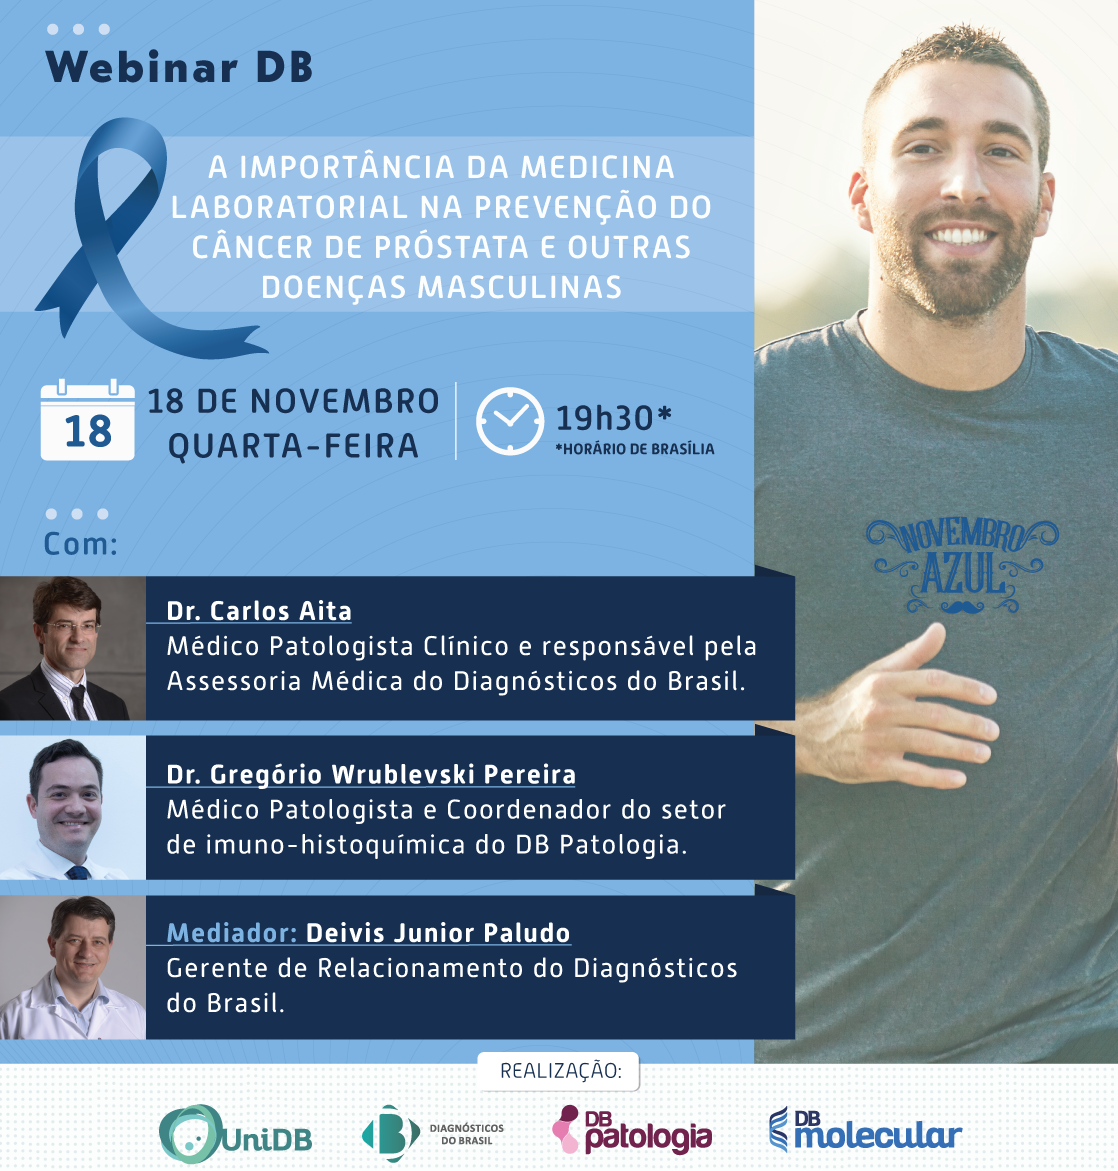 Webinar DB |A importância da medicina laboratorial na prevenção do câncer de próstata e outras doenças masculinas